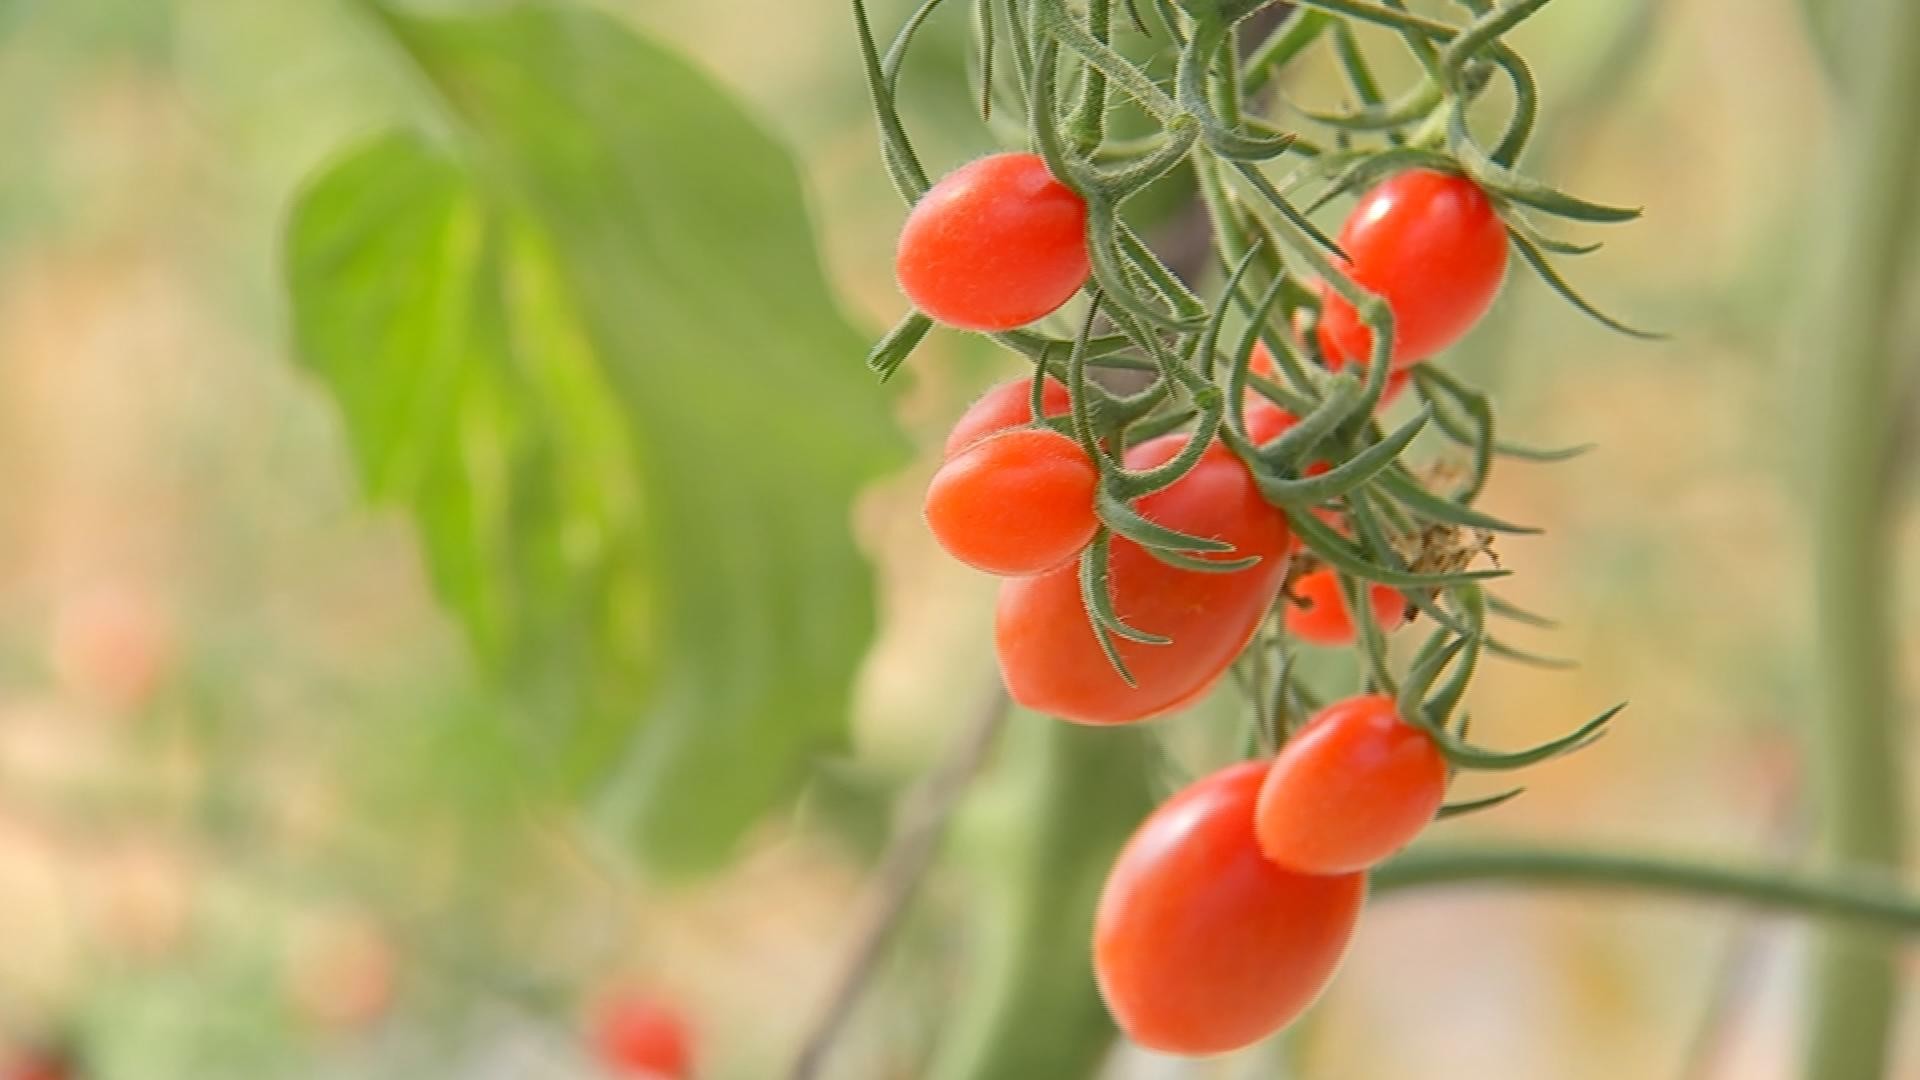 Estufa e tecnologia garantem maior produtividade em plantação de tomate